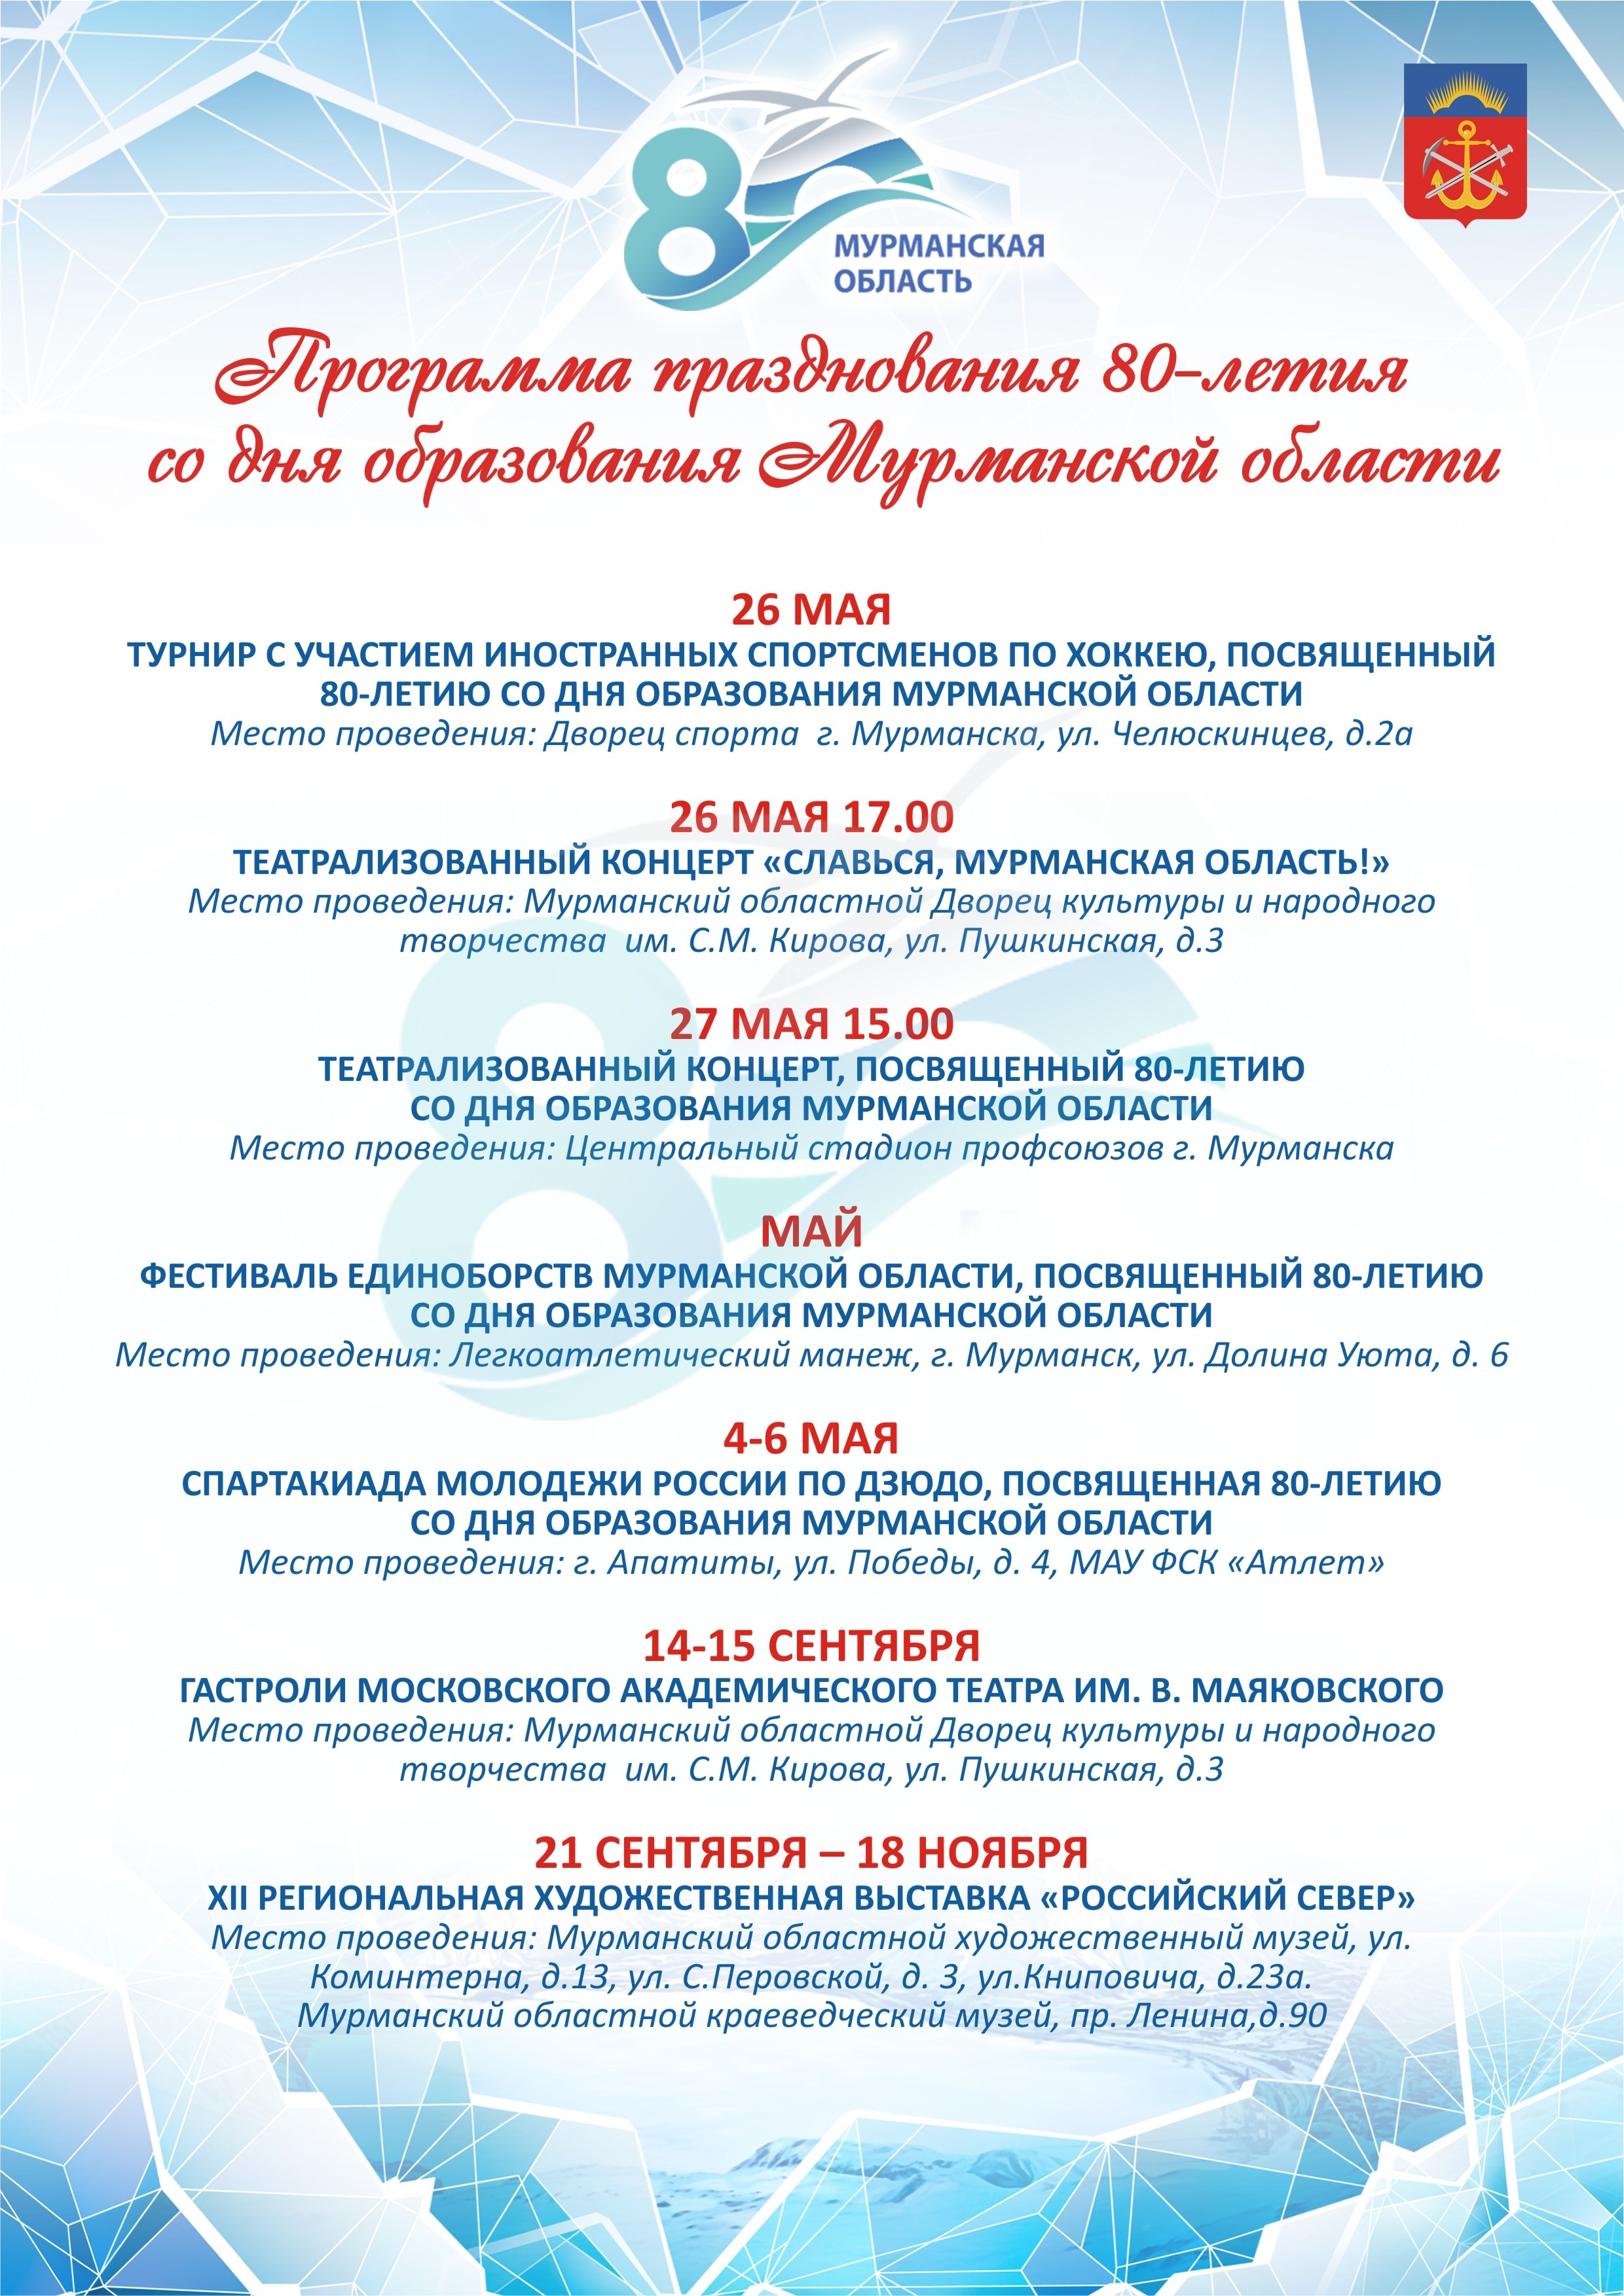 Программа празднования 80-летия Мурманской области